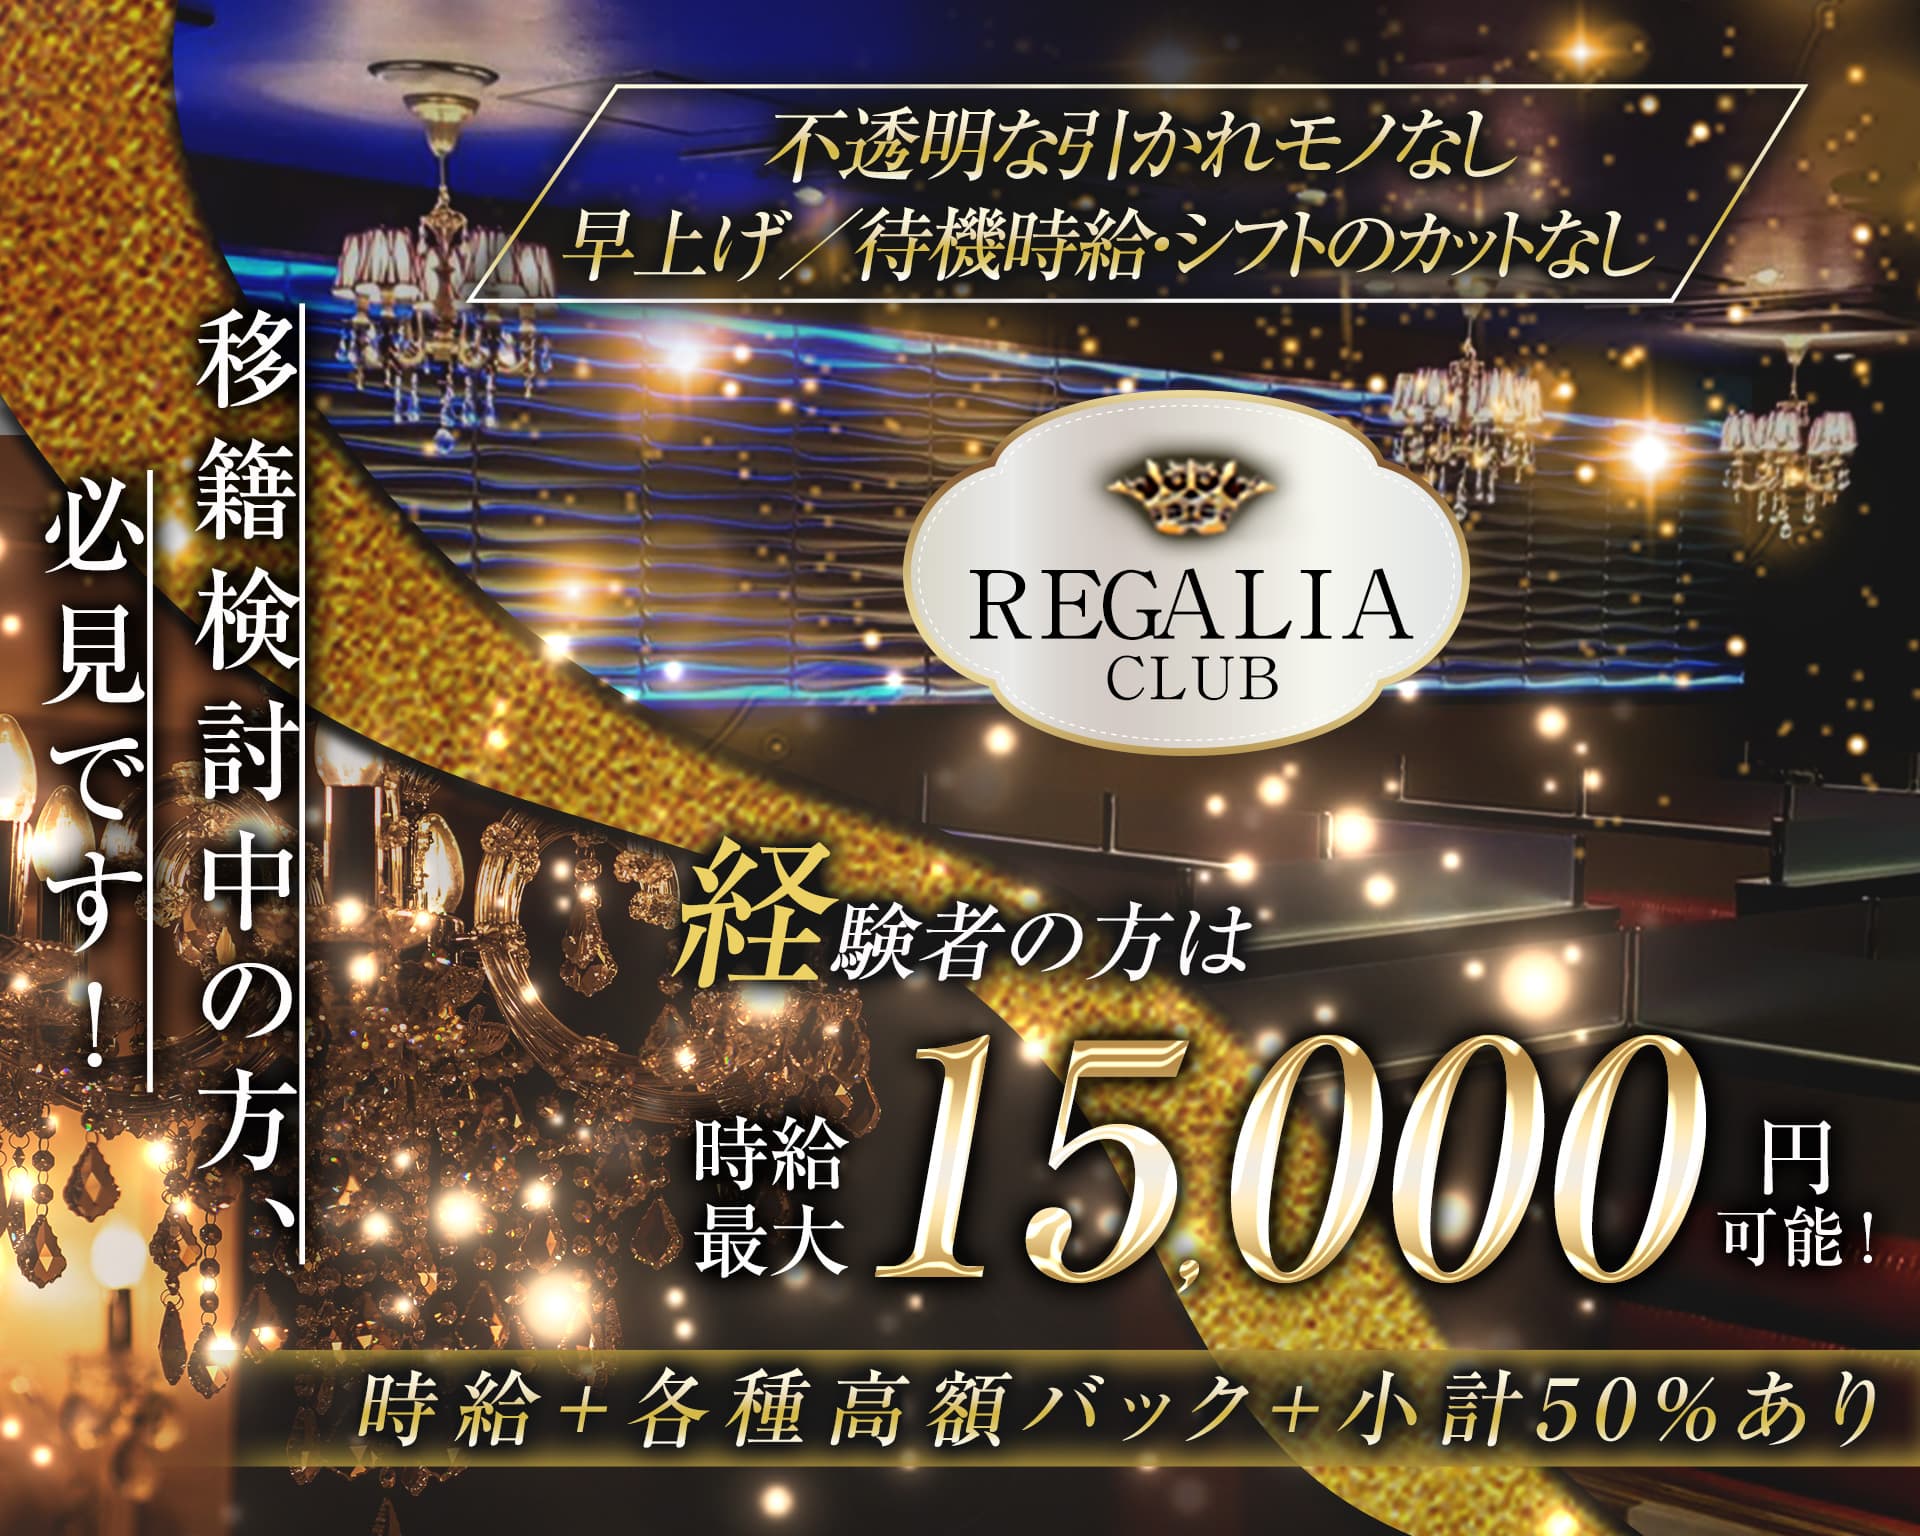 Club REGALIA(レガリア)【公式体入・求人情報】 錦糸町キャバクラ TOP画像